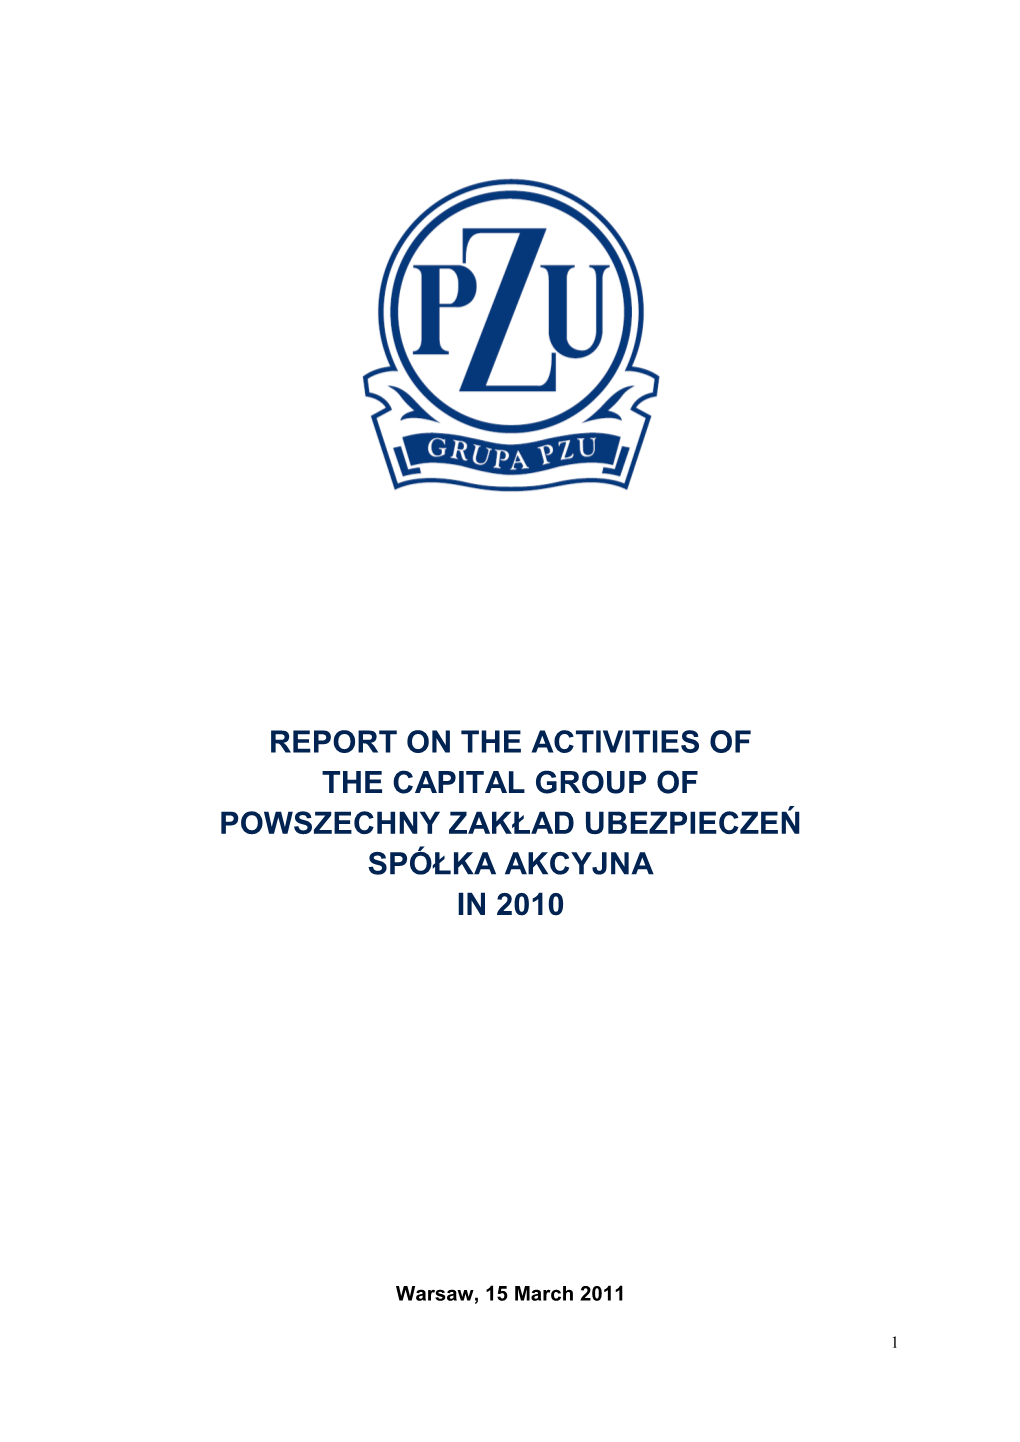 Report on the Activities of the Capital Group of Powszechny Zakład Ubezpieczeń Spółka Akcyjna in 2010